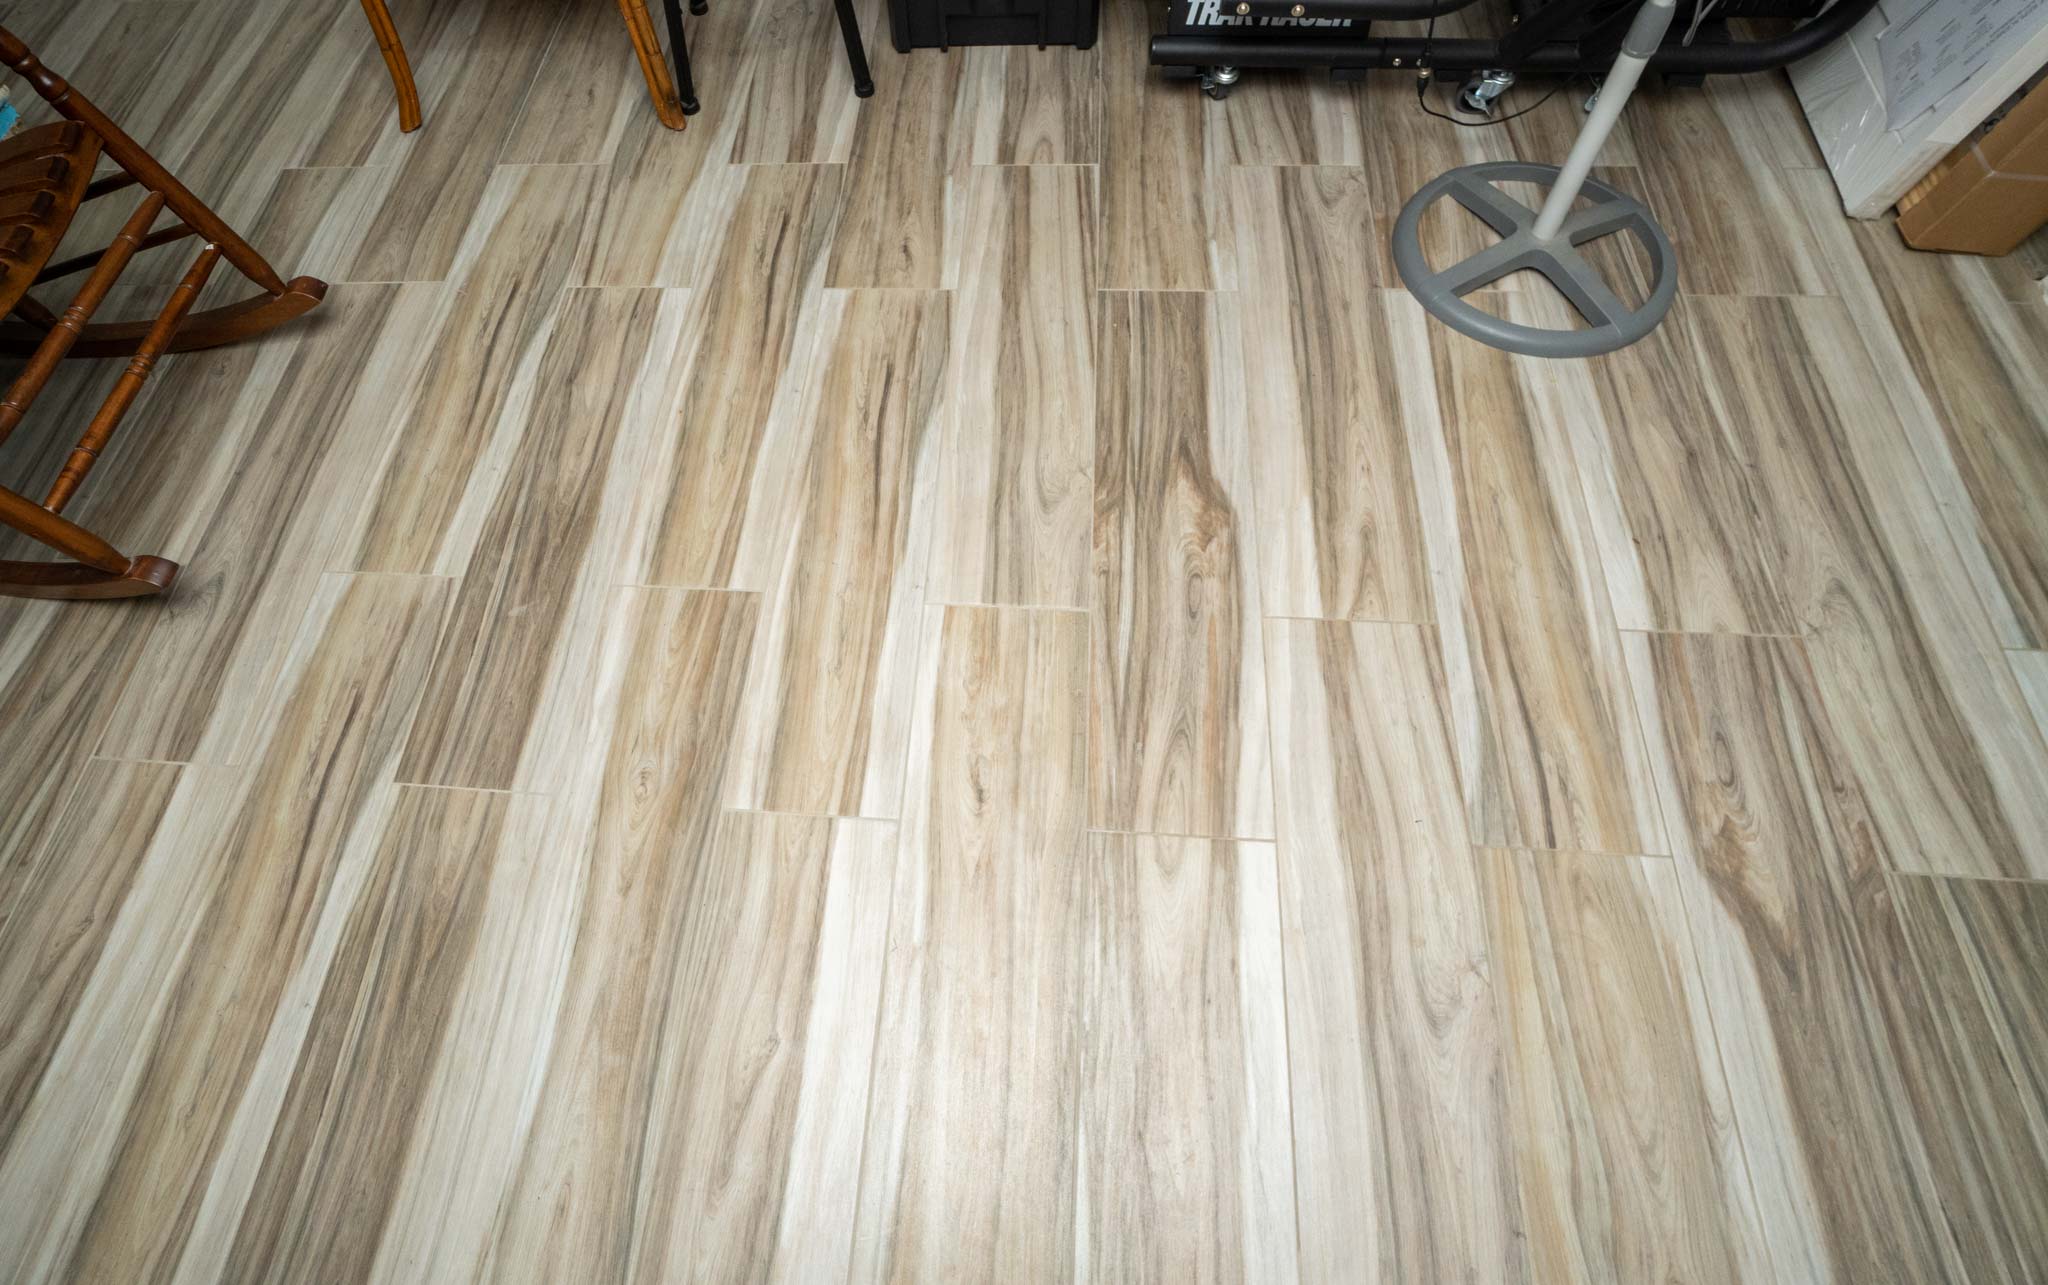 clean tiled floor